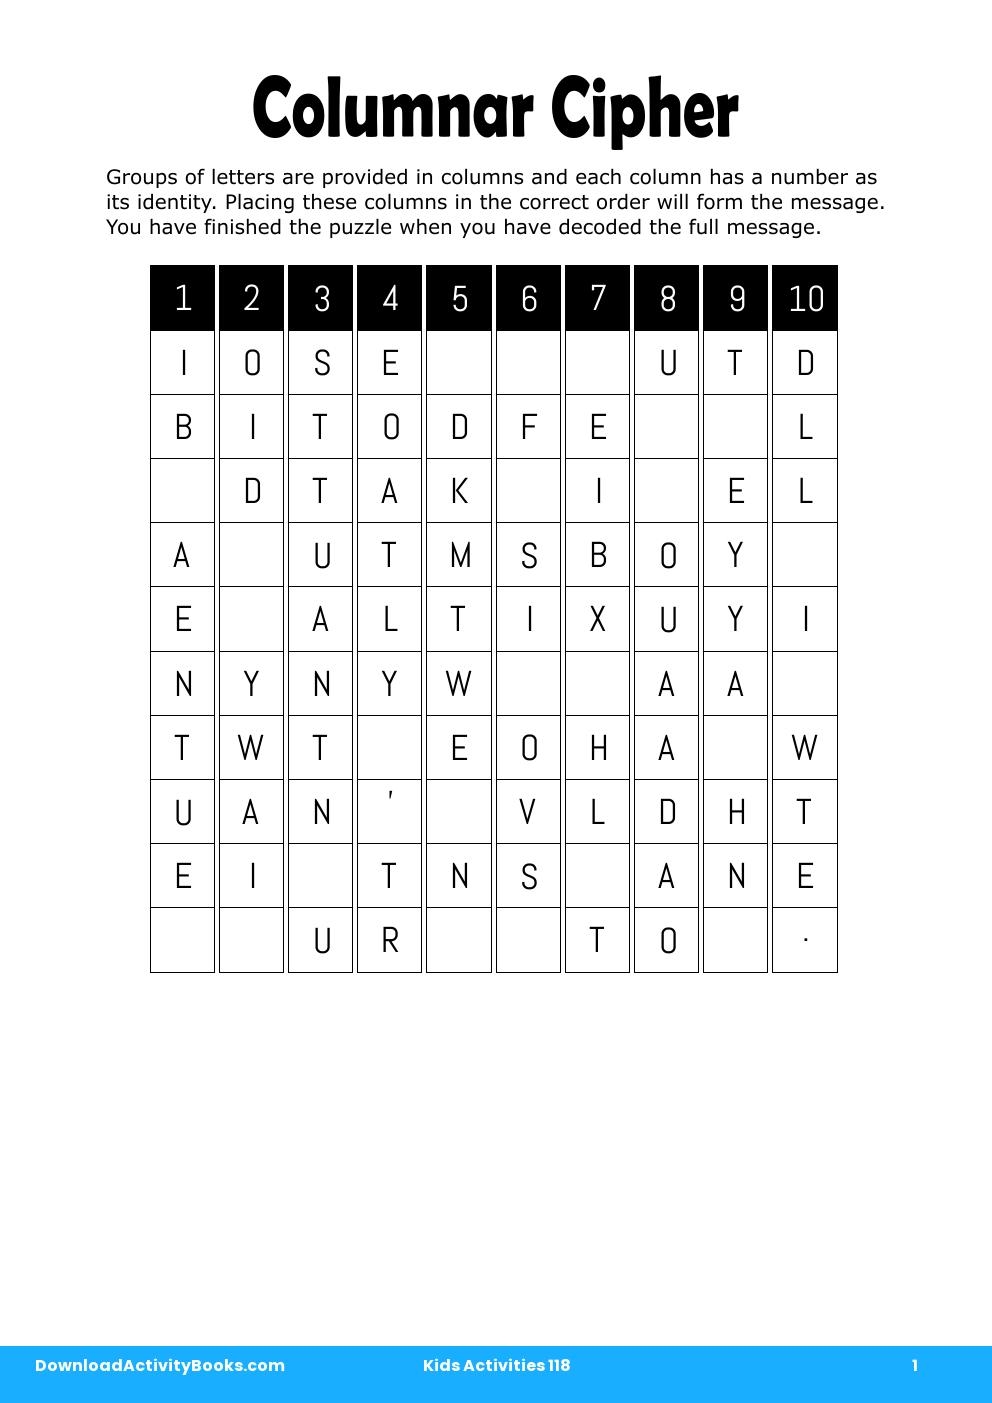 Columnar Cipher in Kids Activities 118